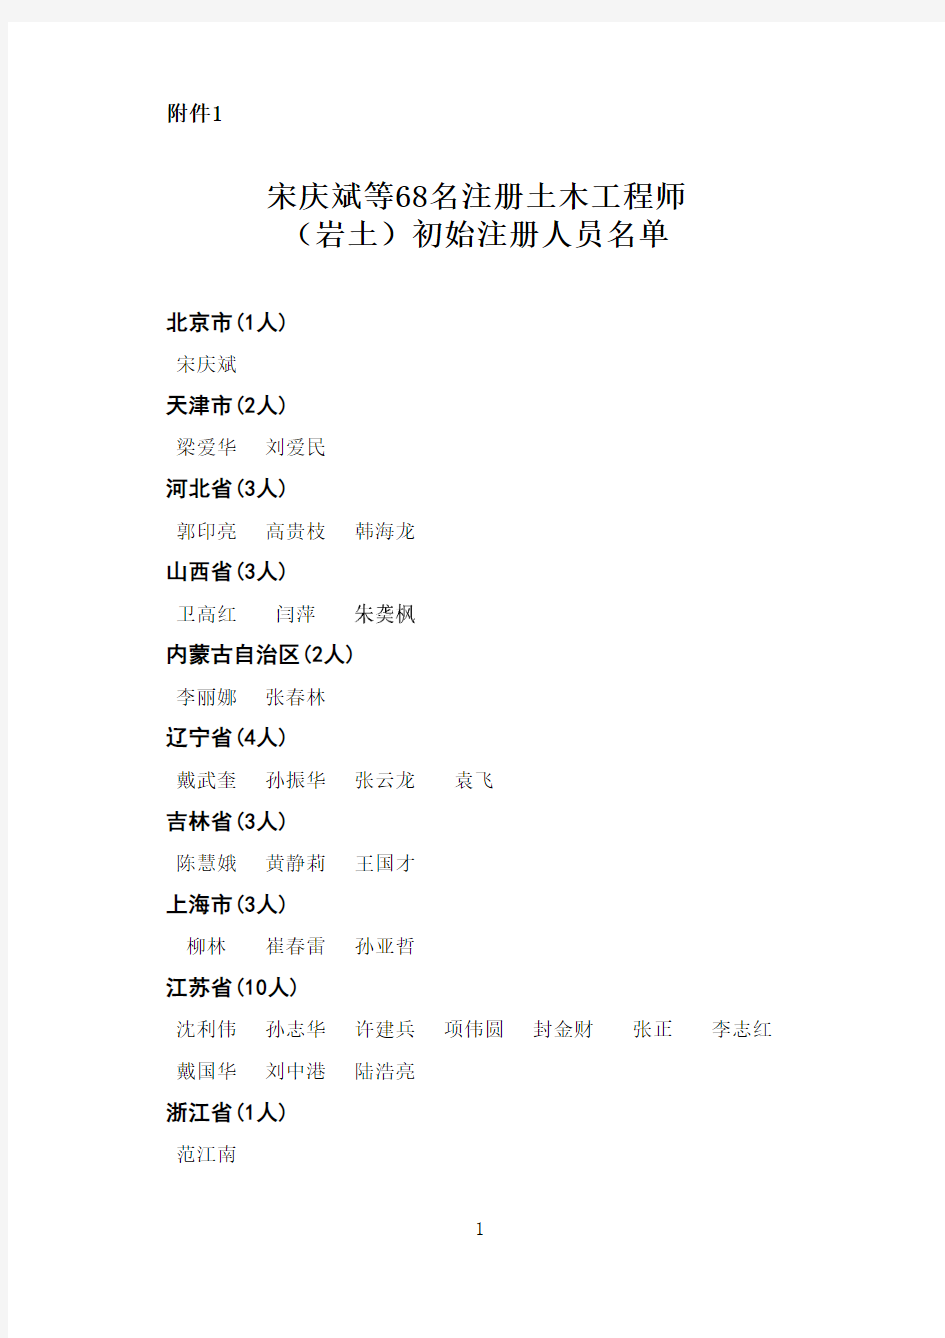 1宋庆斌等68名注册土木工程师(岩土)初始注册人员名单